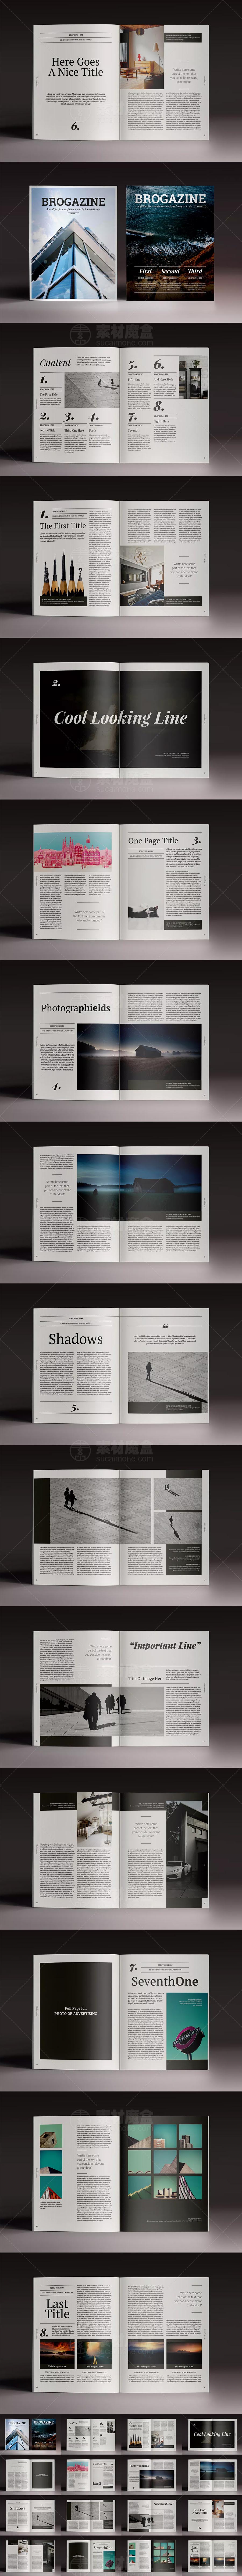 欧美画册杂志InDesign设计素材下载(图1)